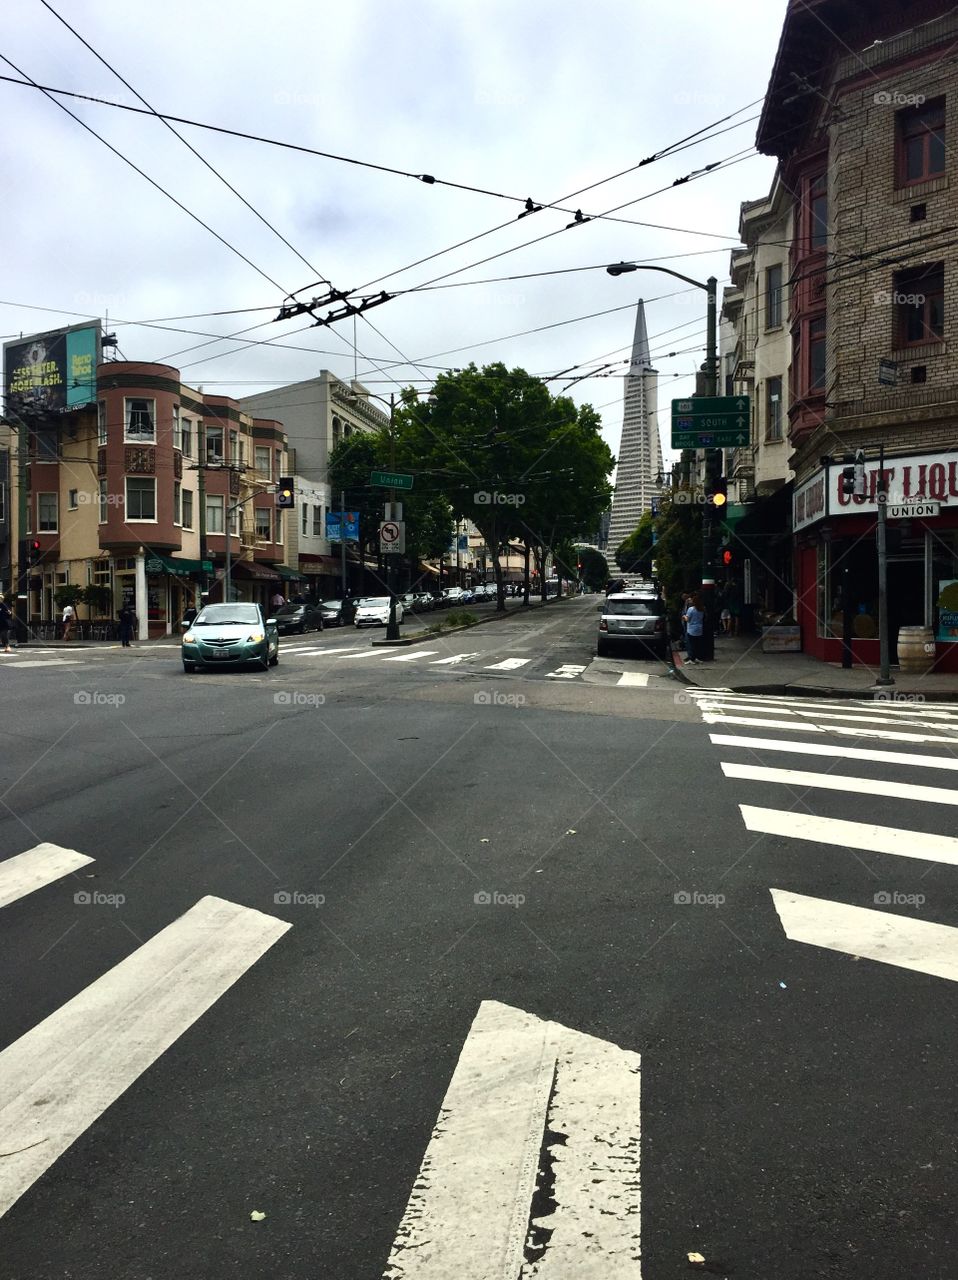 Street corner in San Francisco